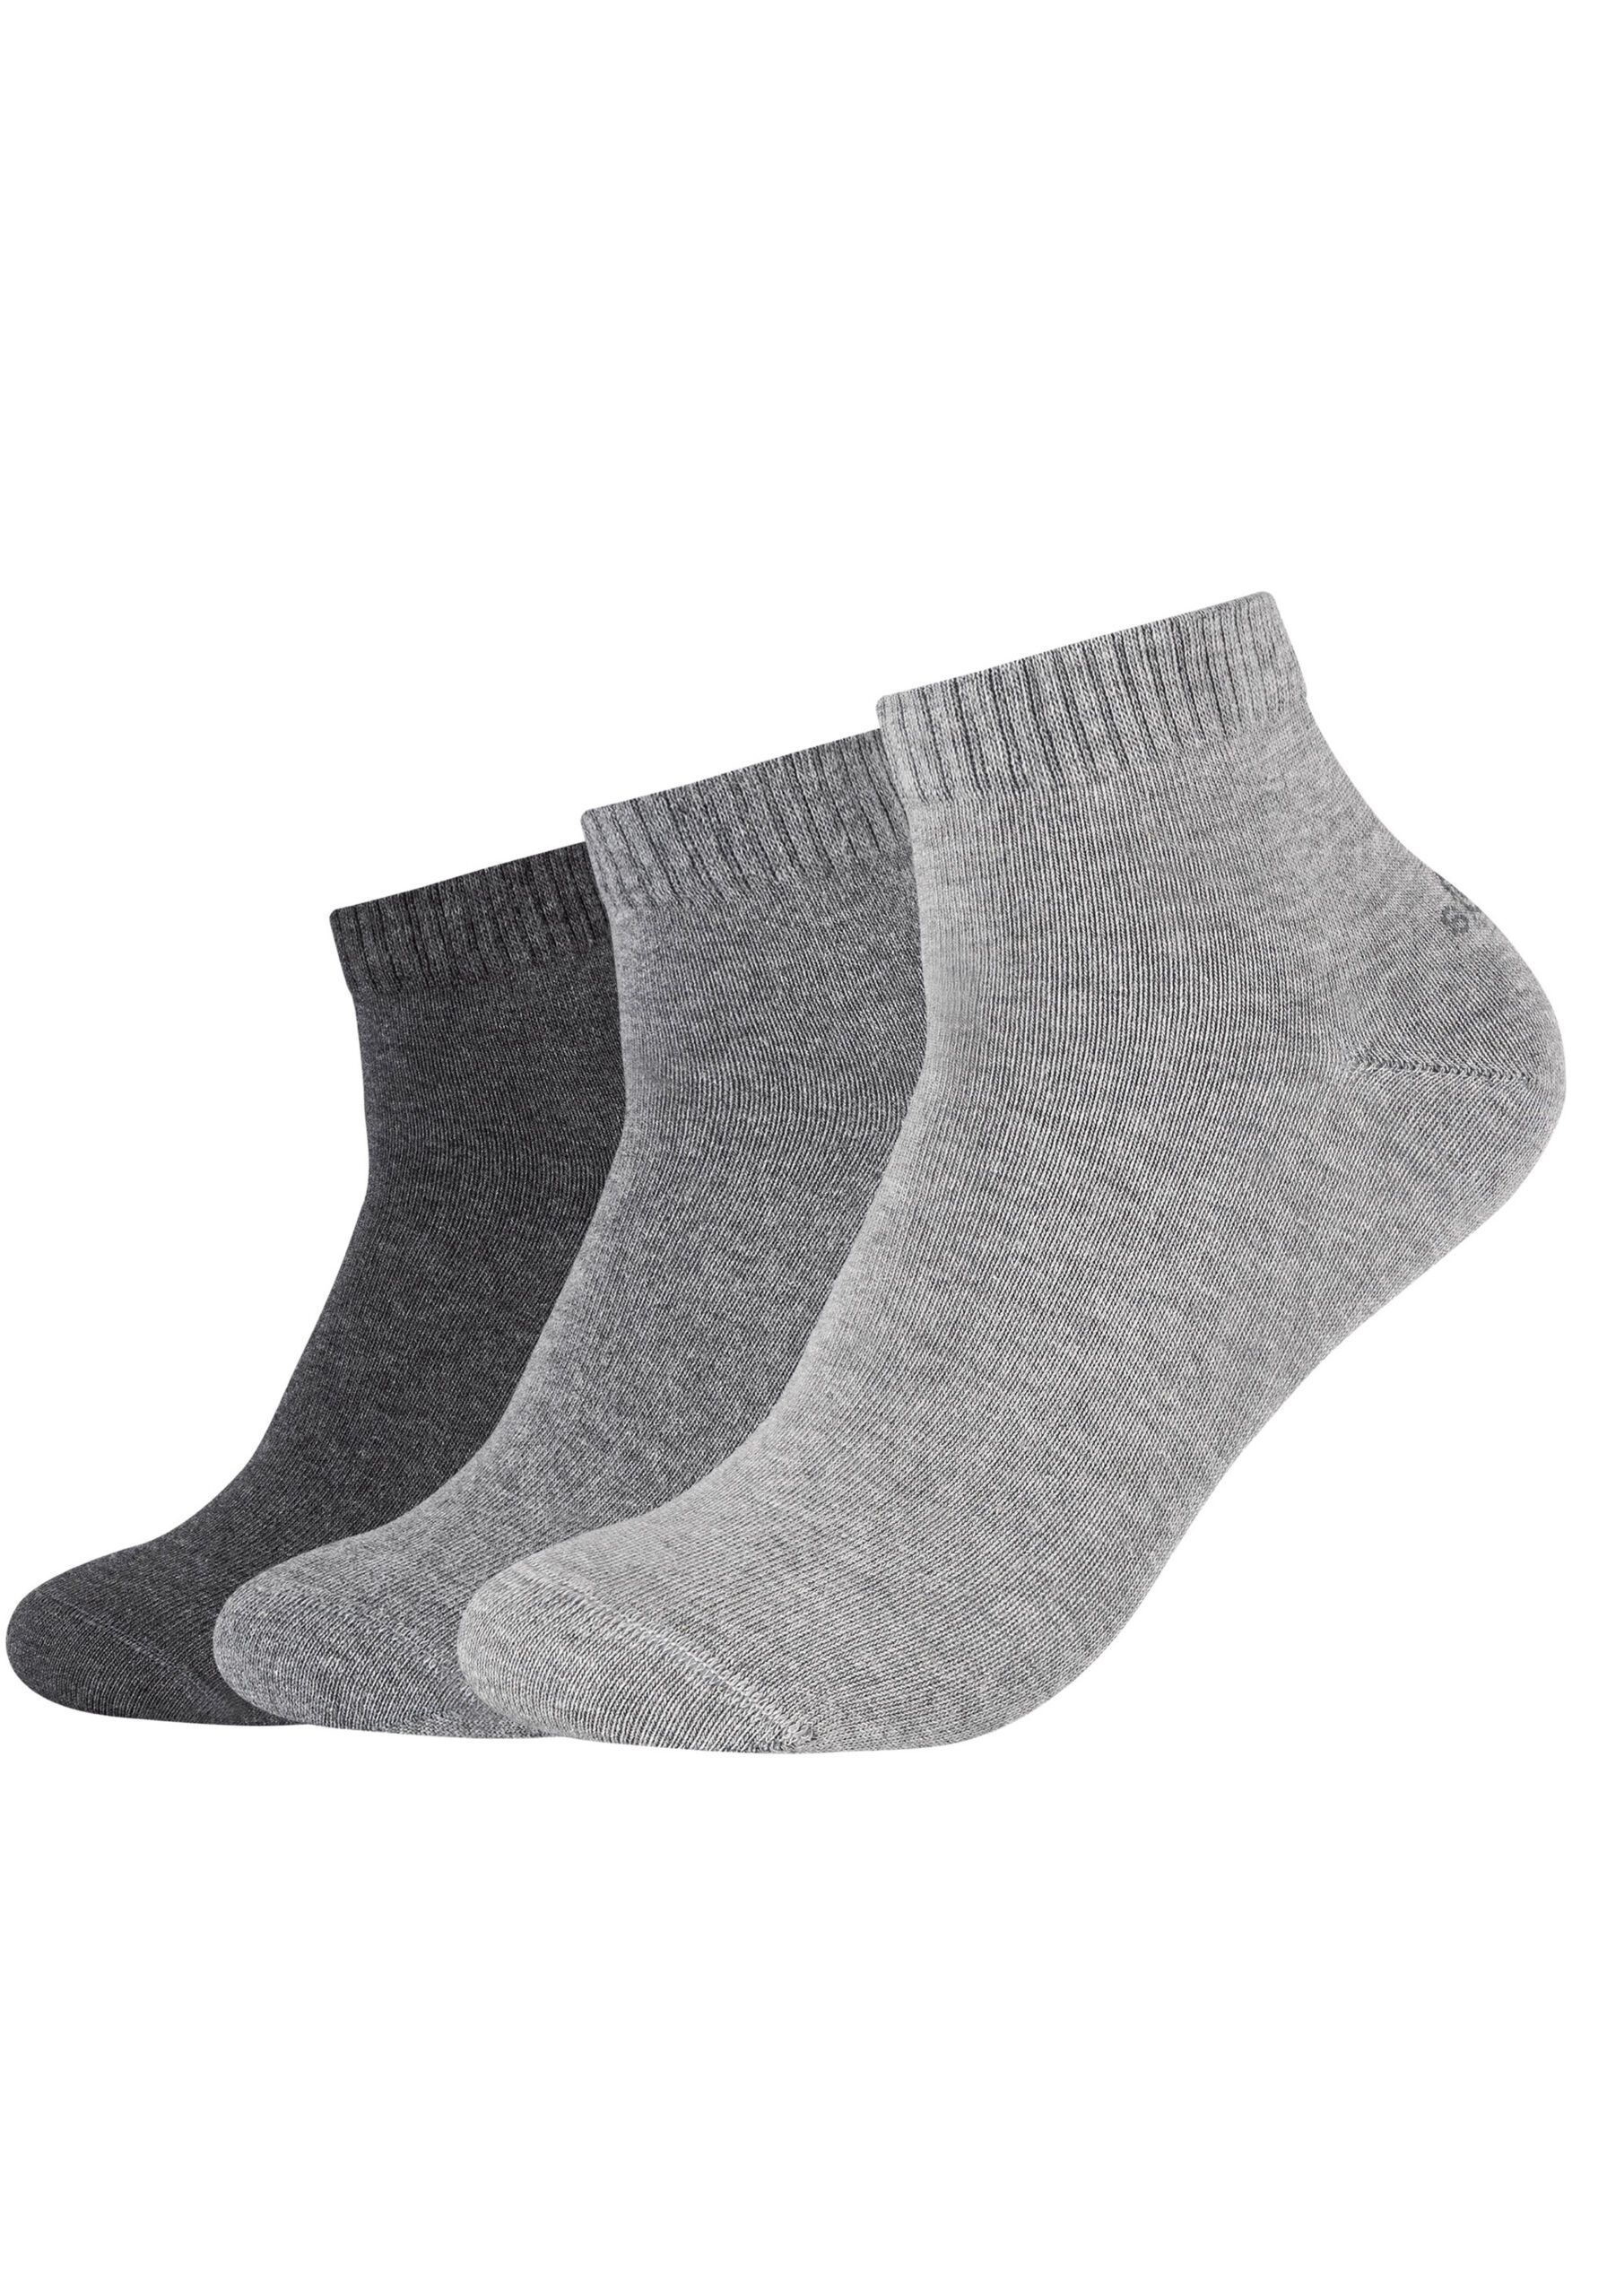 s.Oliver Unisex Sneaker Quarter Sockenduo - Anthrazit Socken Paar Grau 3